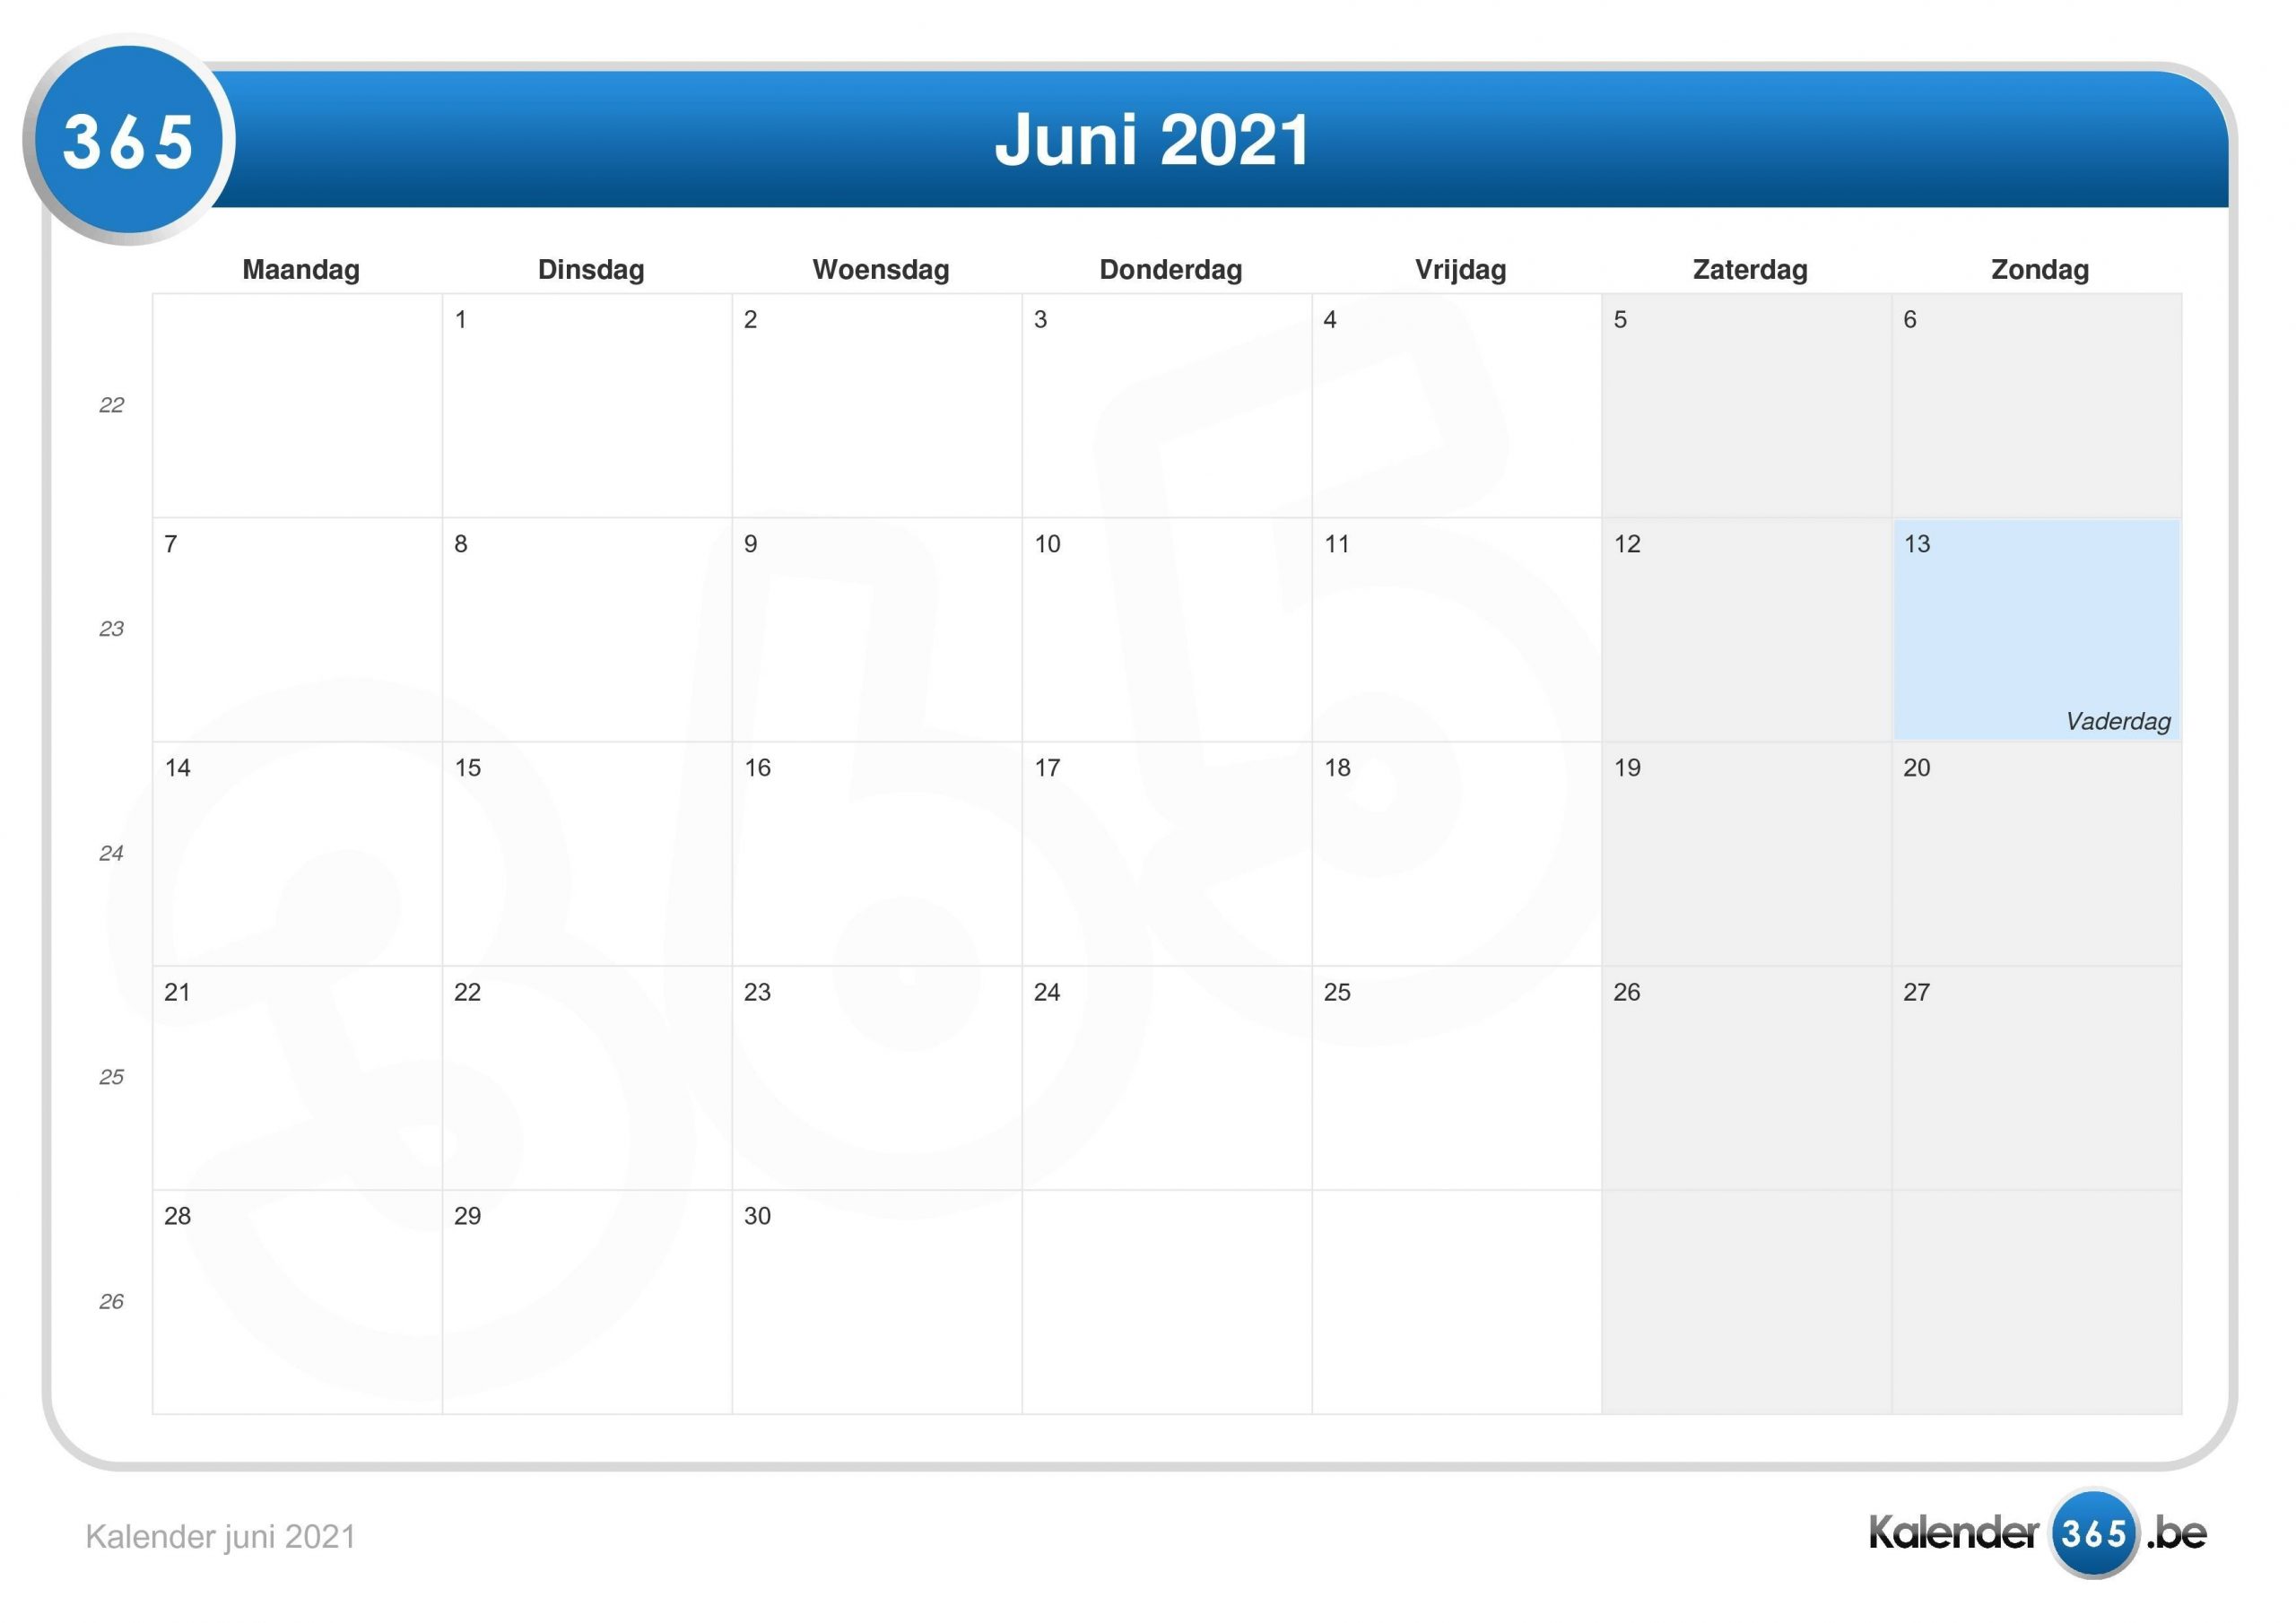 Get Kalender 2021 Juni